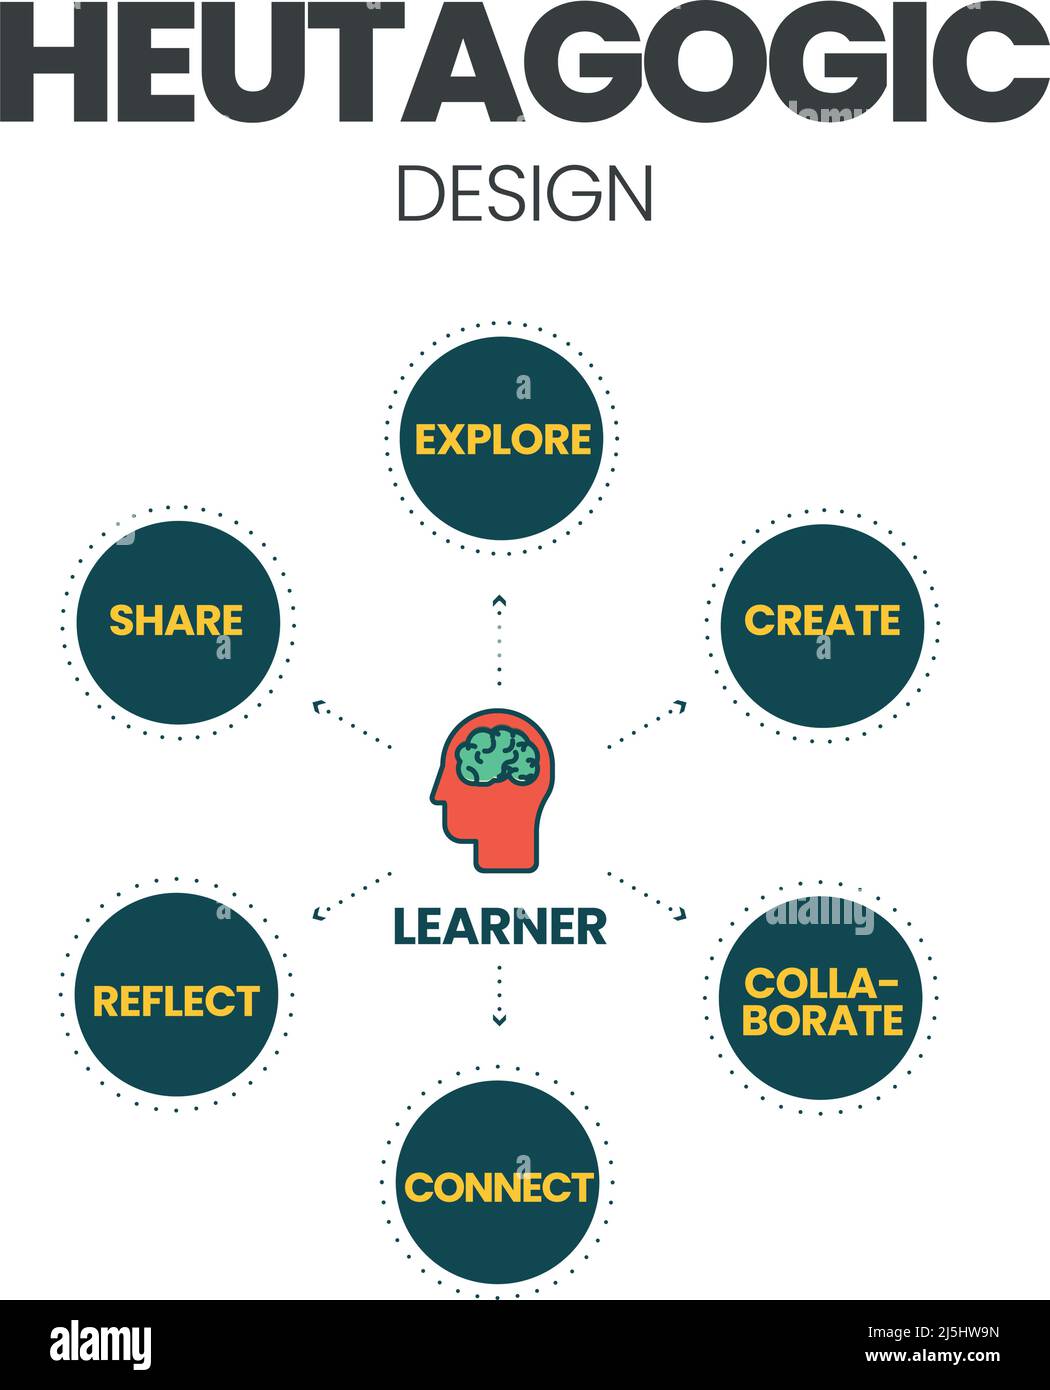 Une illustration vectorielle de la conception heutagogique de l'apprentissage dans le concept Heutagogy, une forme d'apprentissage auto-déterminé avec des pratiques et des principes enracinés i Illustration de Vecteur